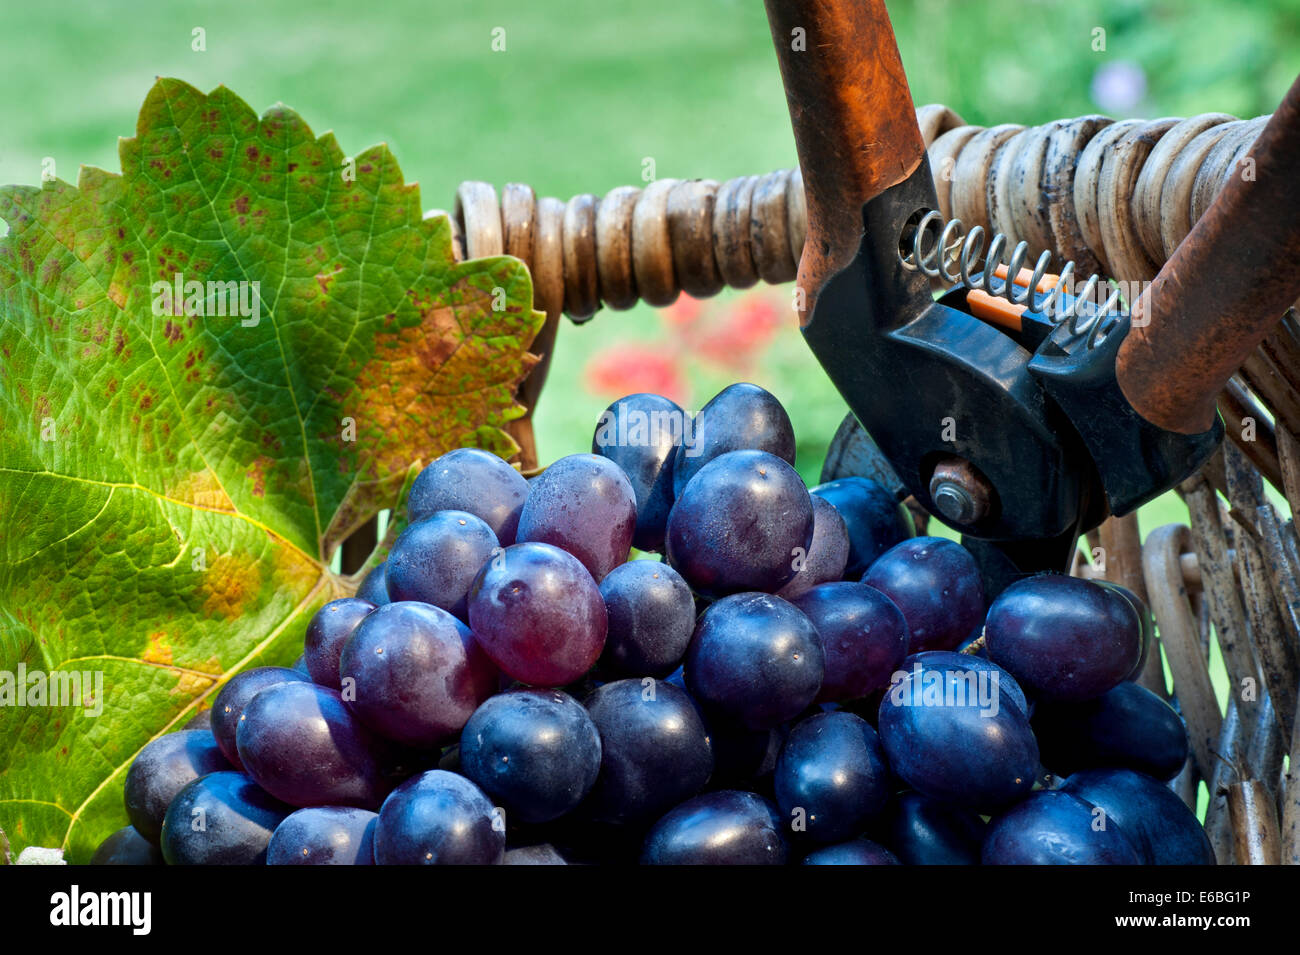 Wine harvest close up vendange concept à raisins noirs et en feuille de vigne vin typique de pêcheurs professionnels panier avec des sécateurs Banque D'Images